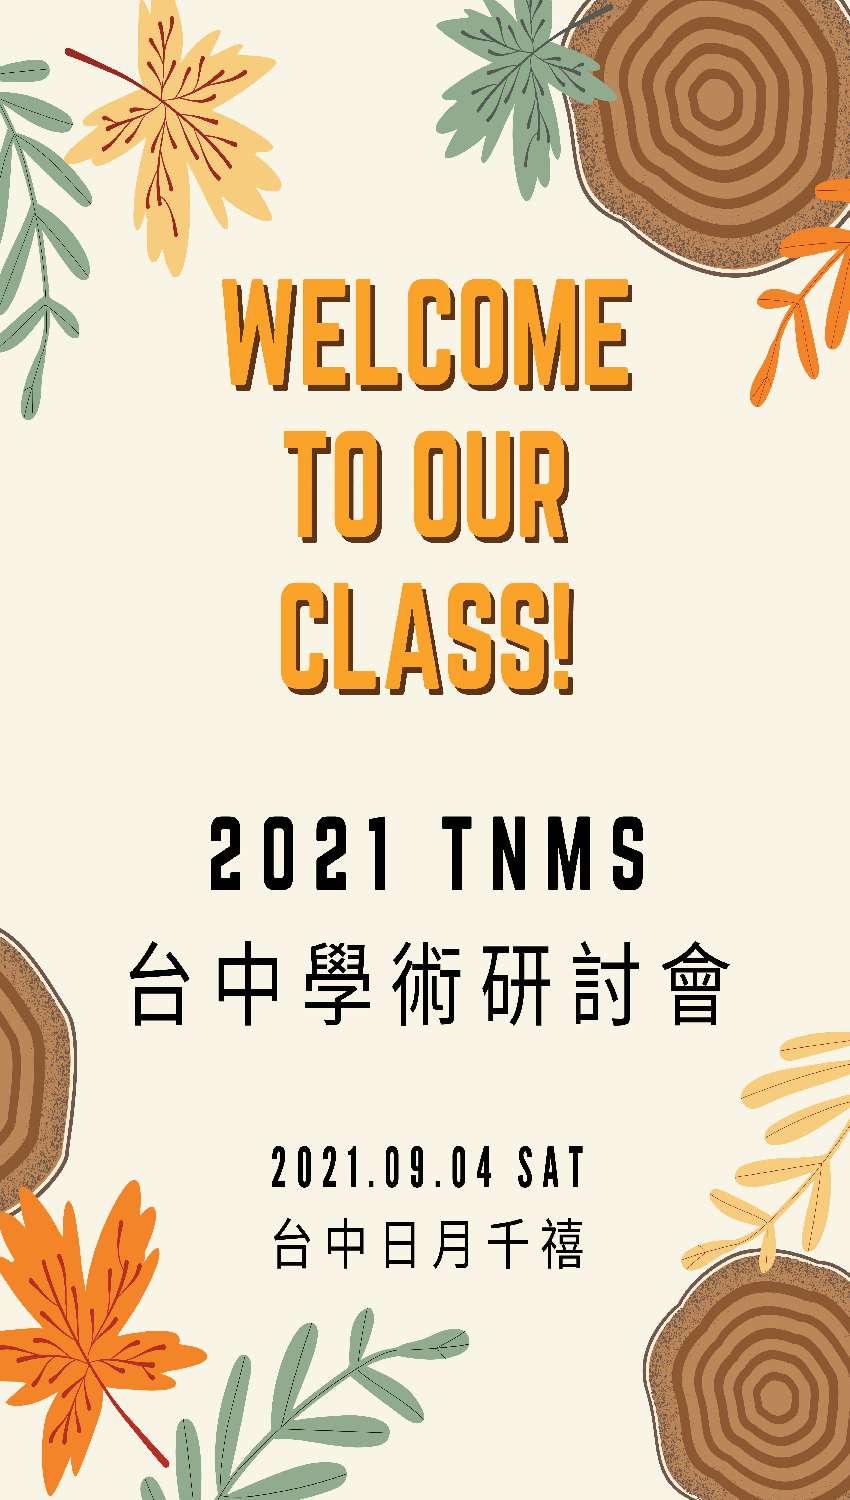 2021TNMS台灣